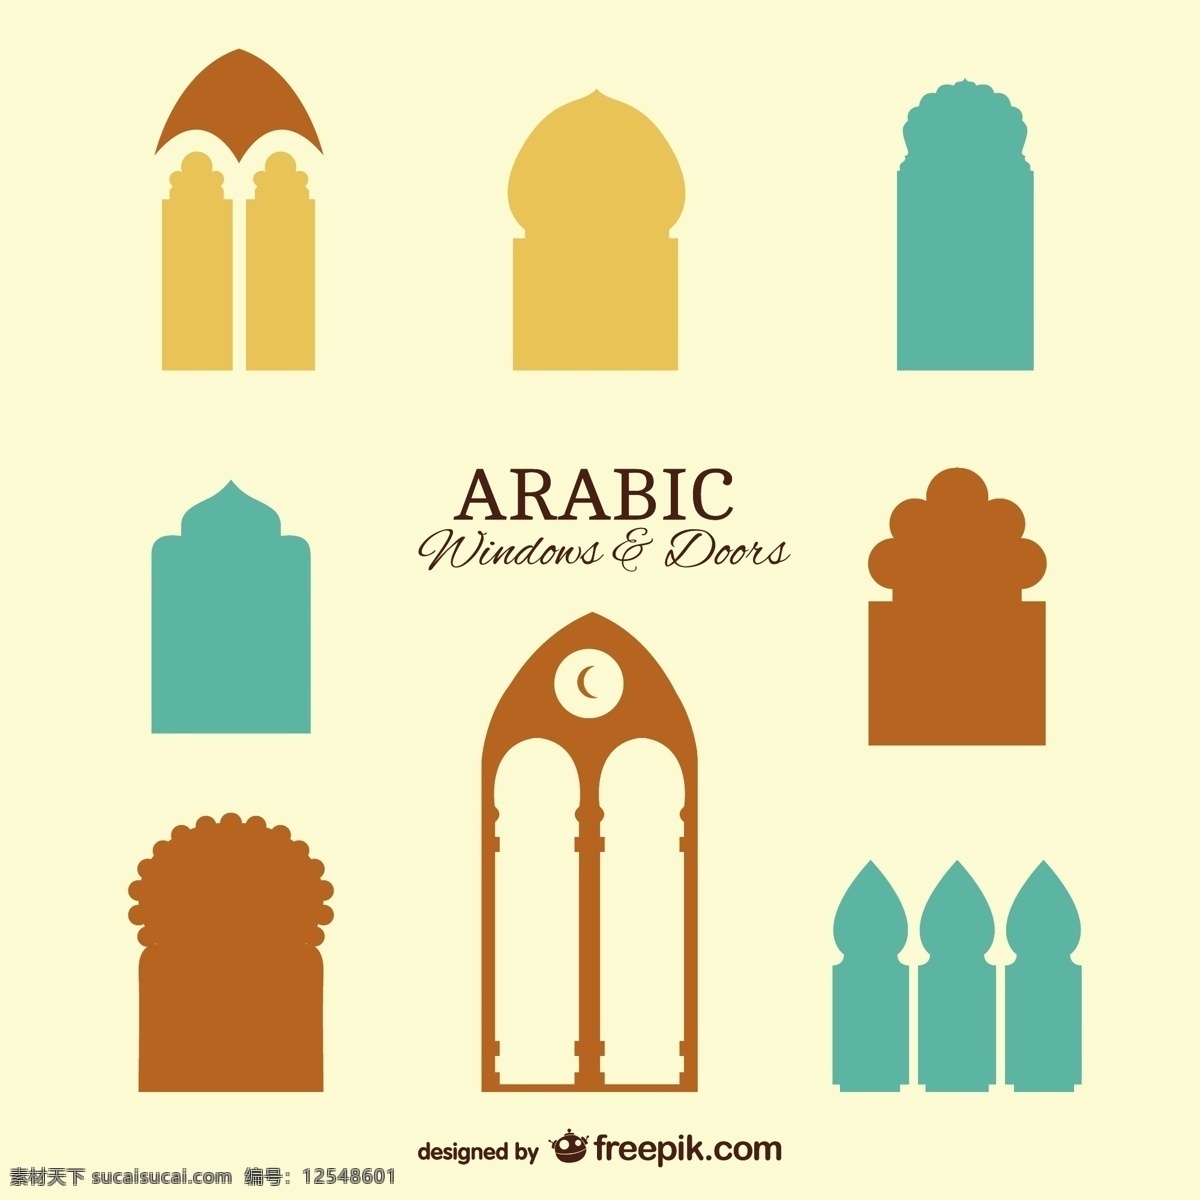 阿拉伯语 窗口 门 家庭 图形 布局 平面设计 房间 梦想 室内 元素 插图 设计元素 符号 开放 室内设计 窗户 出口 白色